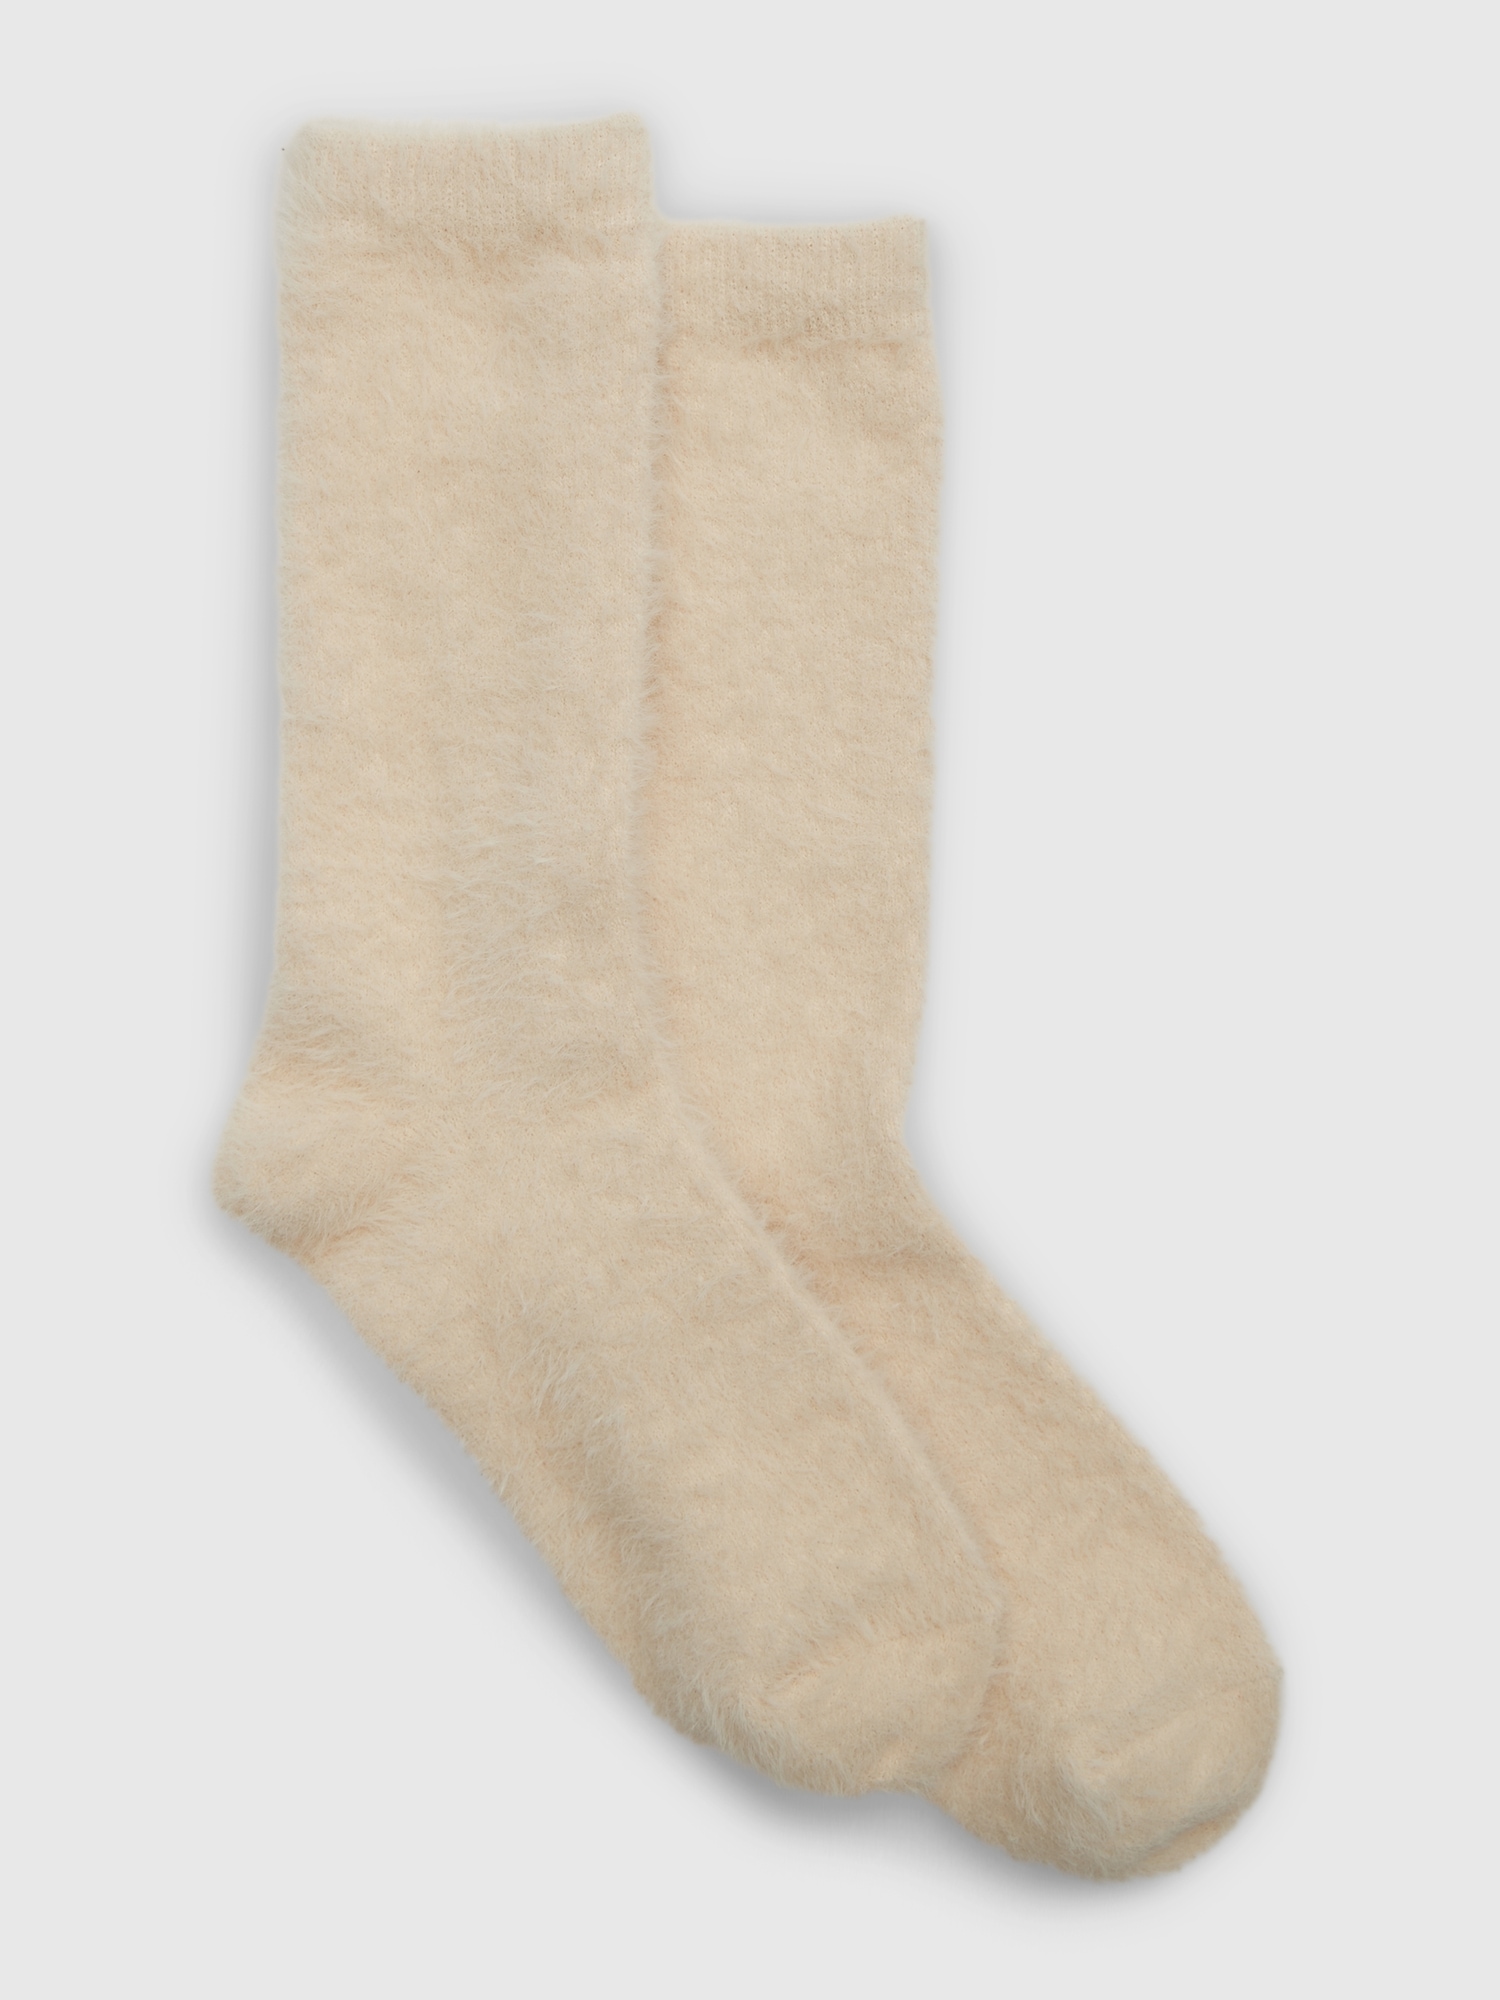 Fluffy Fuzzy Socks -  Canada